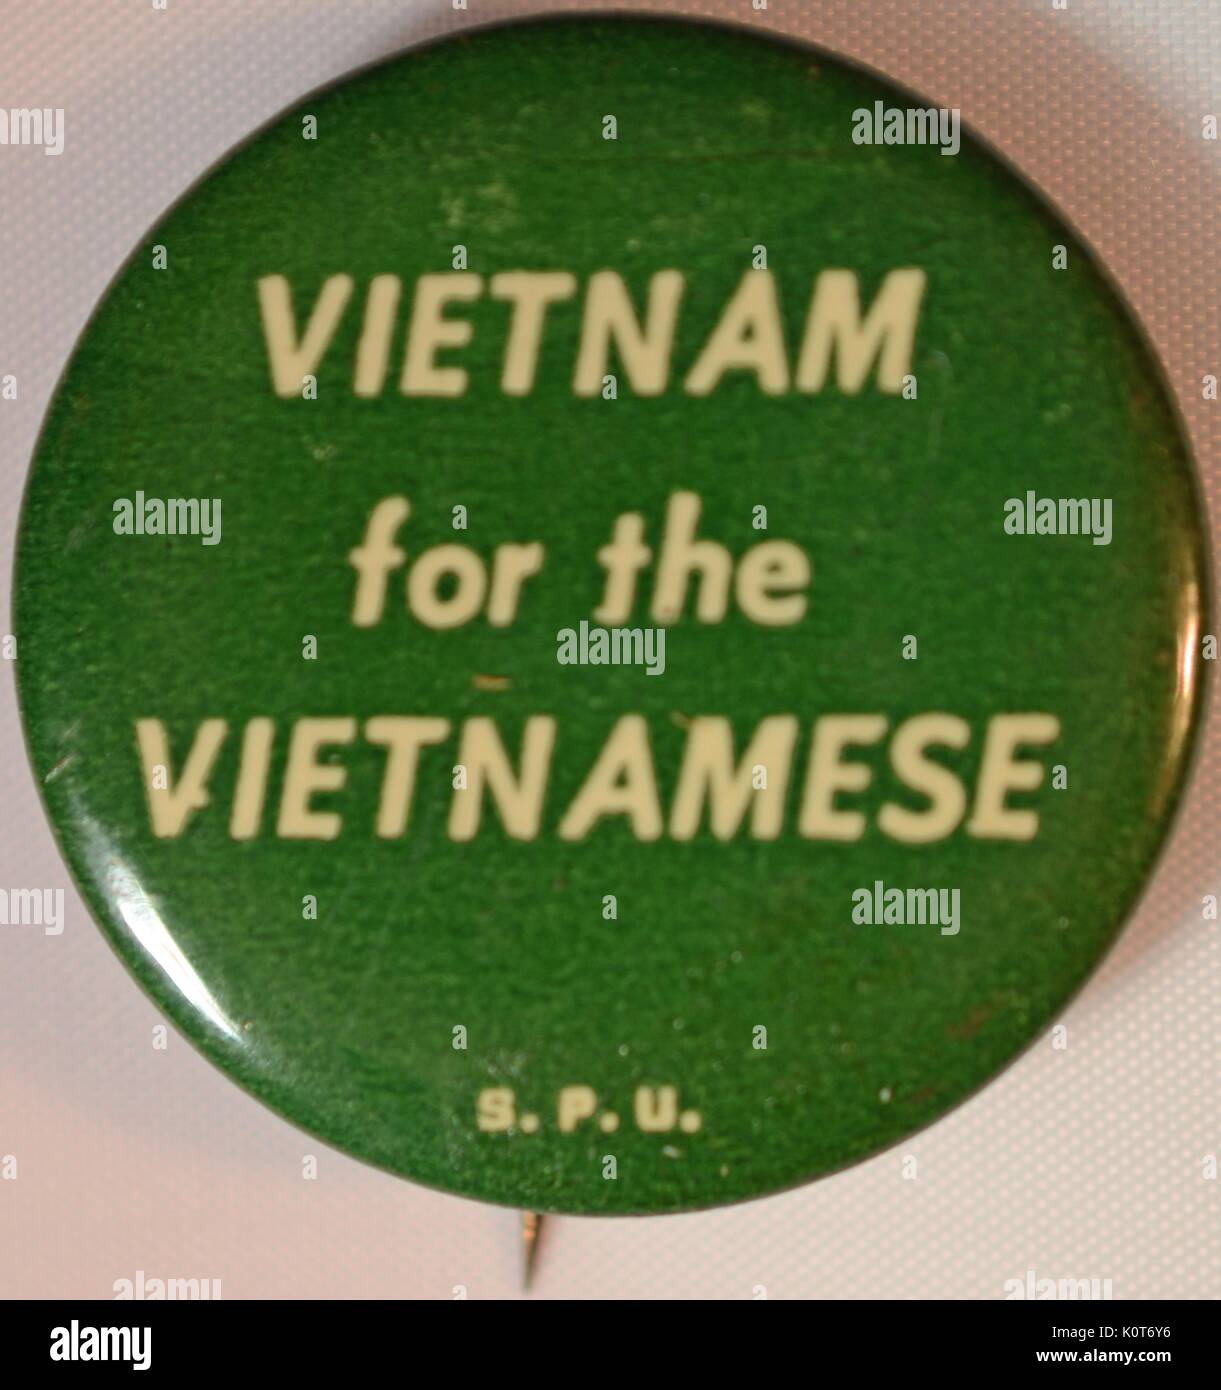 Une protestation contre la guerre du Vietnam l'axe avec un fond vert que de fonctionnalités pour des lettres blanches qui lit 'Vietnam' pour les vietnamiens, il a été produit par l'étudiant de l'Union de la paix. 1970. Banque D'Images